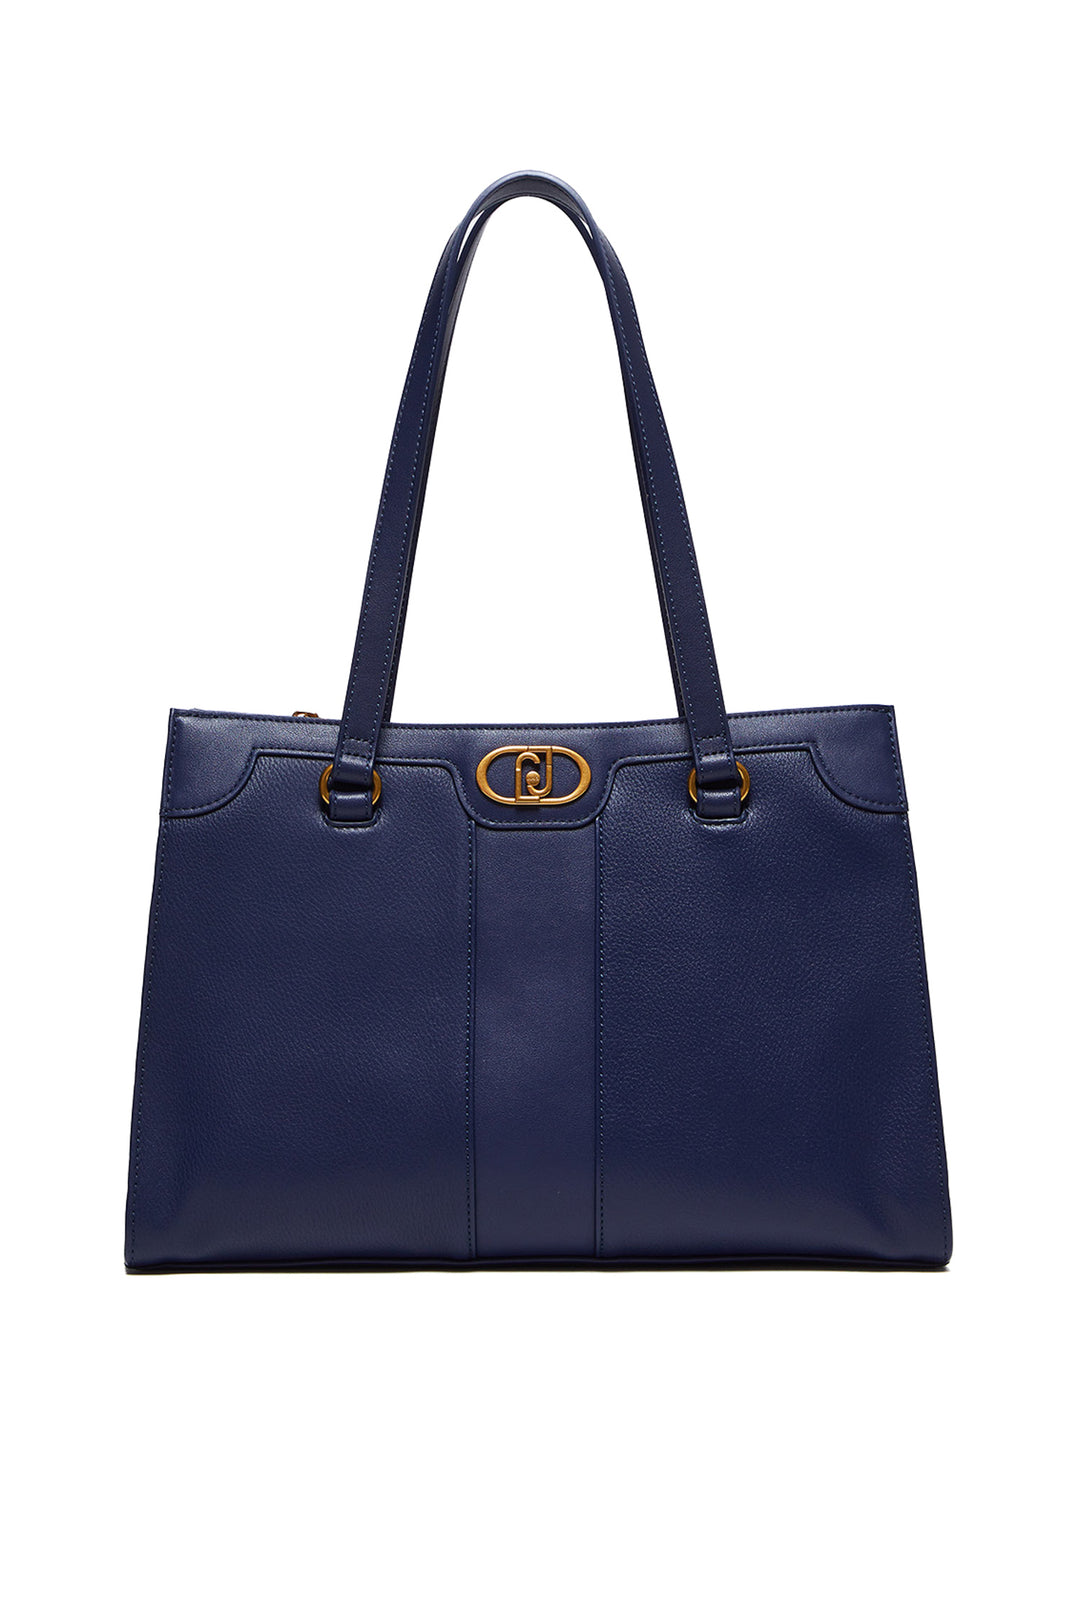 LIU JO Shopping bag blu scuro effetto bottalato con logo - Mancinelli 1954